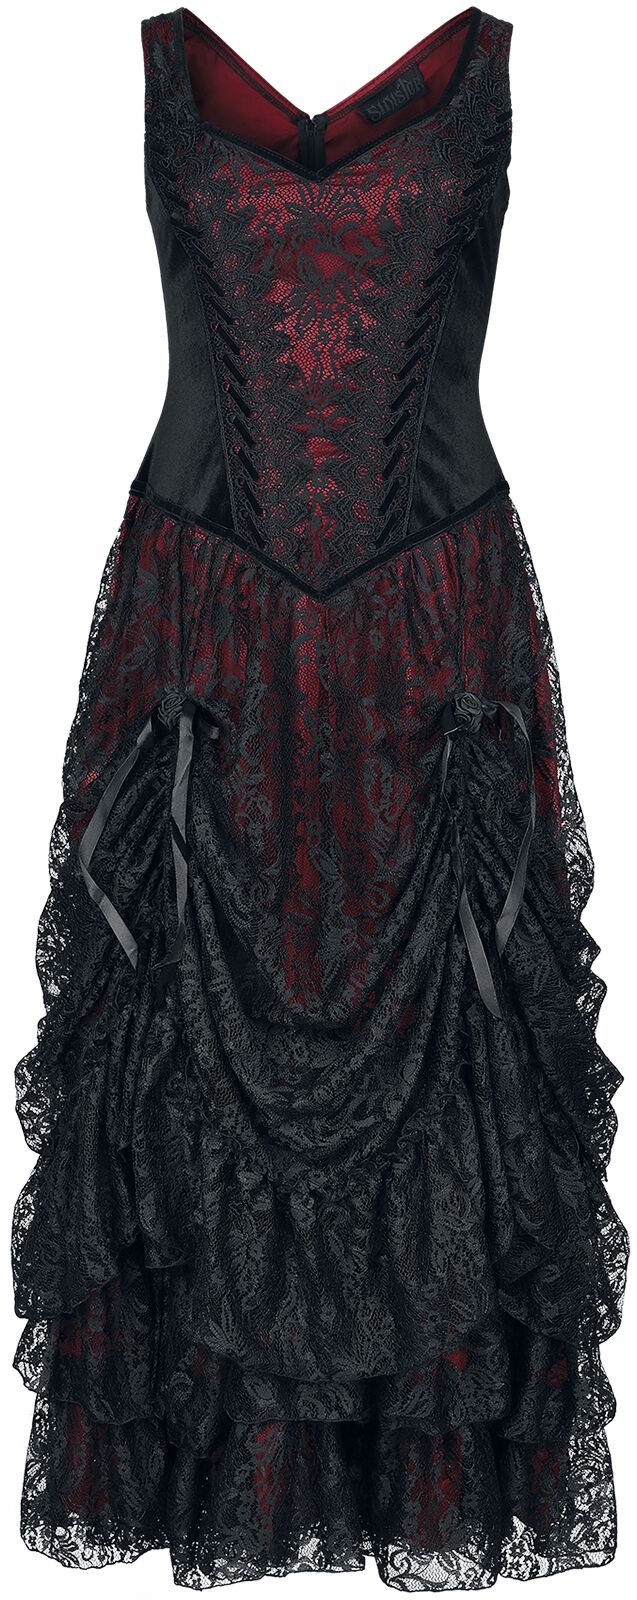 Sinister Gothic - Gothic Kleid lang - Longdress - M bis 4XL - für Damen - Größe M - schwarz/rot